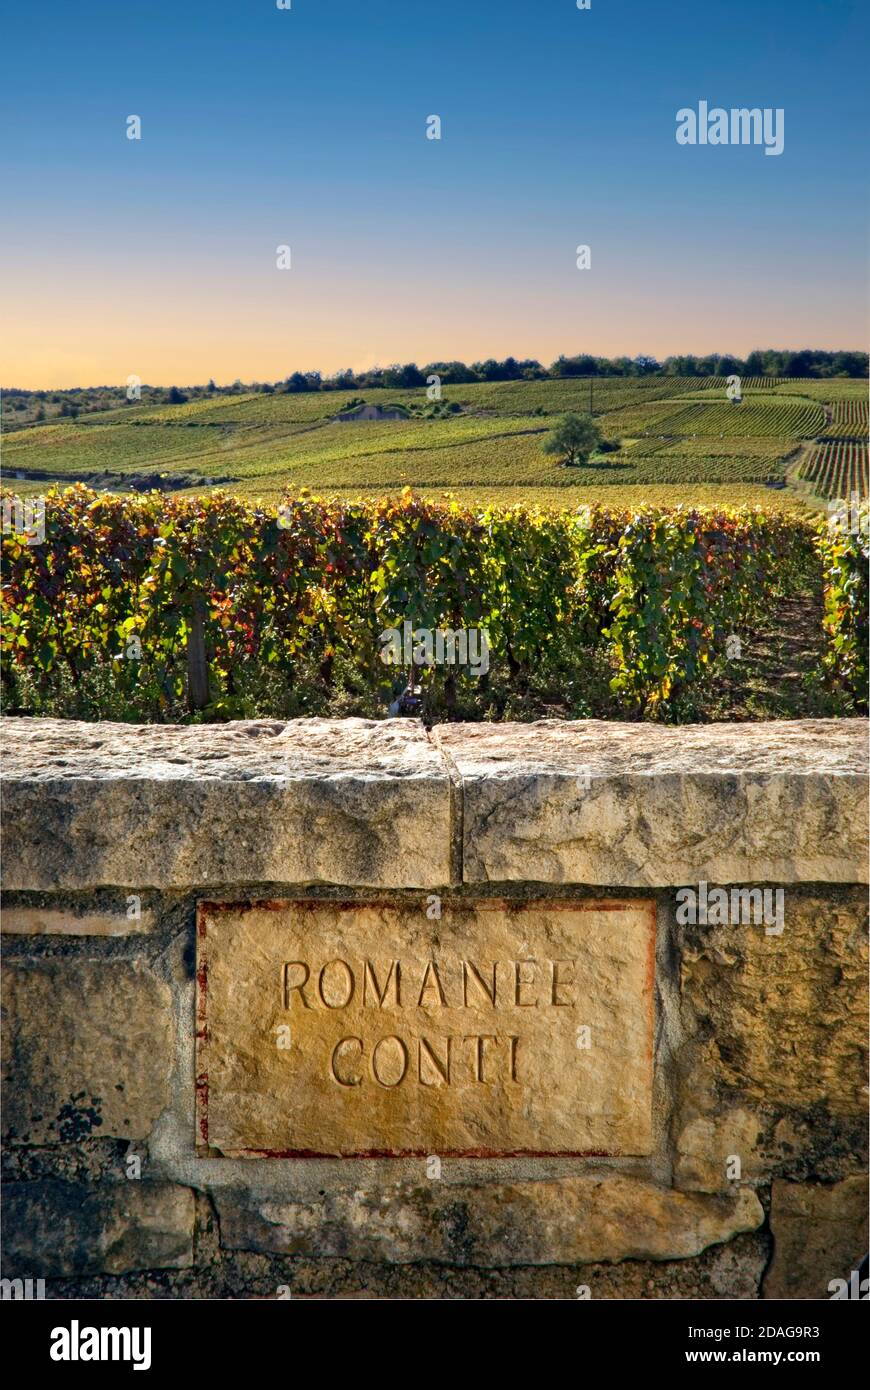 Vignoble Romanee-Conti en fin d’après-midi soleil, plaque de nom en pierre gravée dans le mur limite domaine de la Romanee-Conti Vosne-Romanee Bourgogne Côte d’Or France Banque D'Images